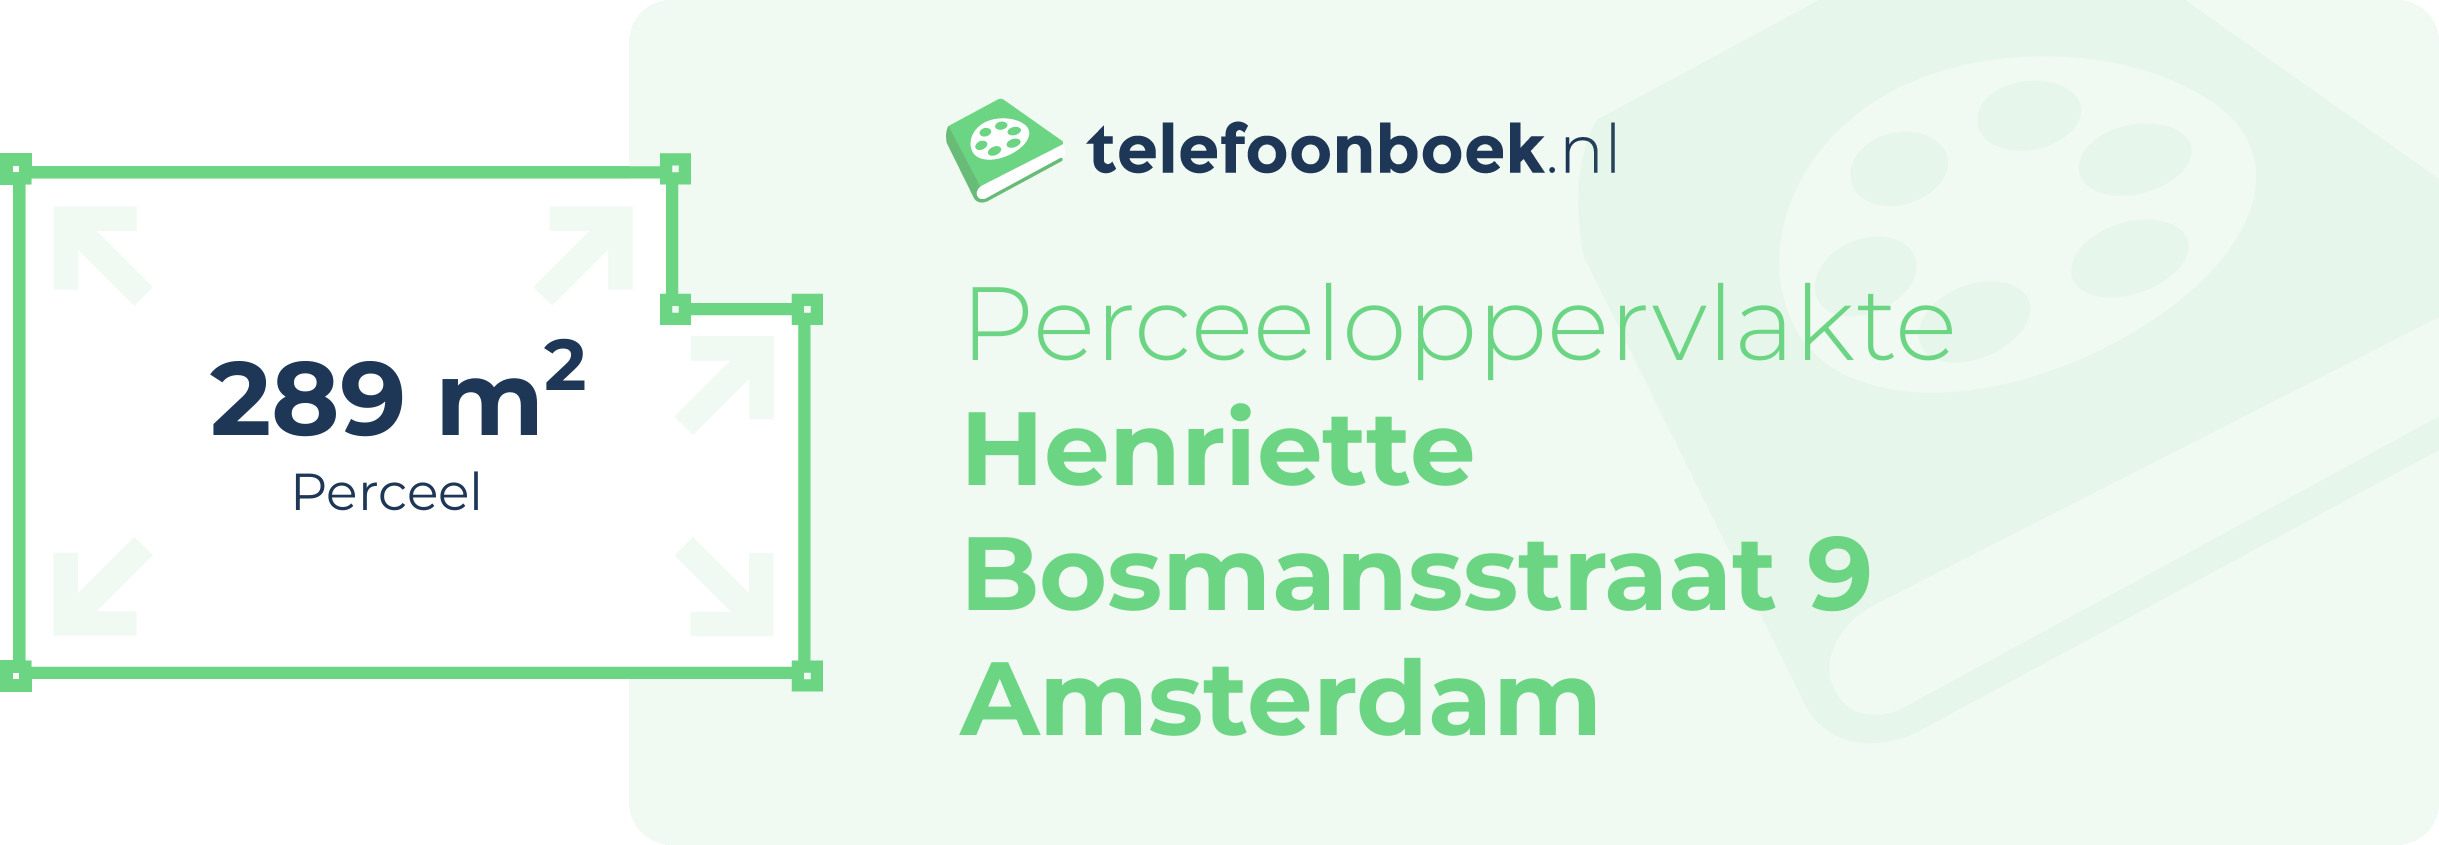 Perceeloppervlakte Henriette Bosmansstraat 9 Amsterdam